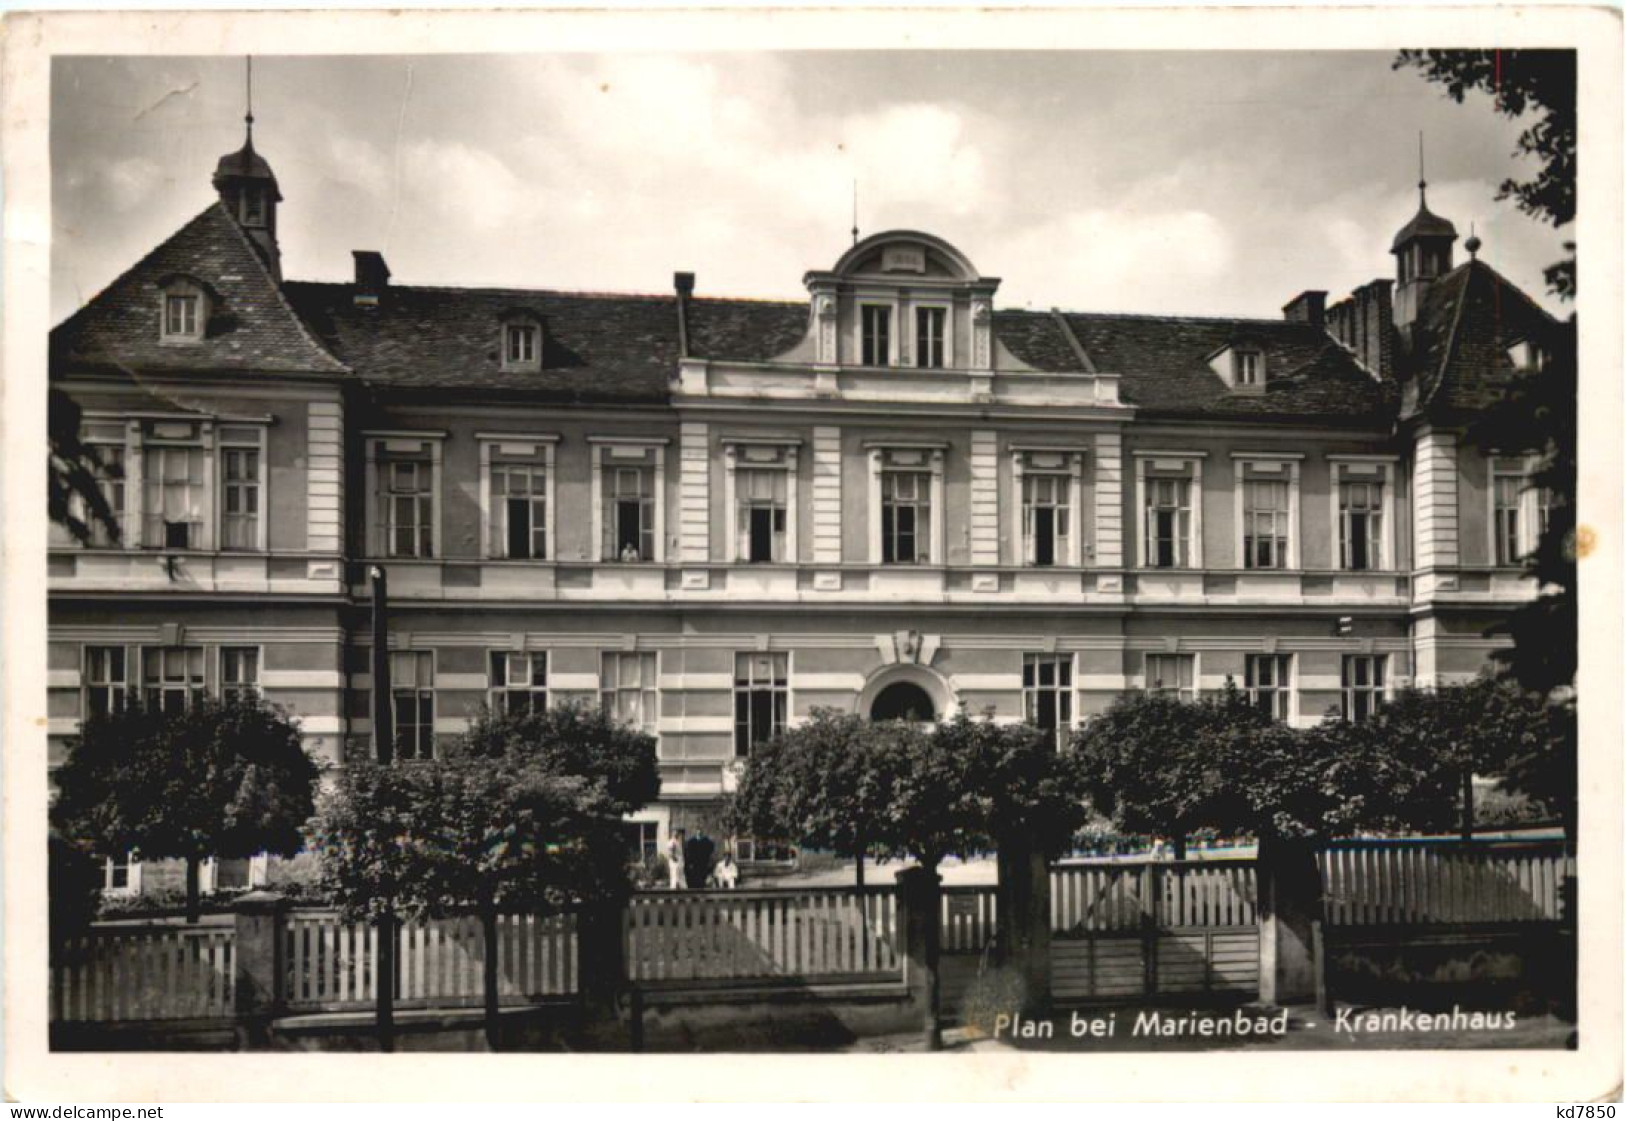 Plan Bei Marienbad - Krankenhaus - Boehmen Und Maehren